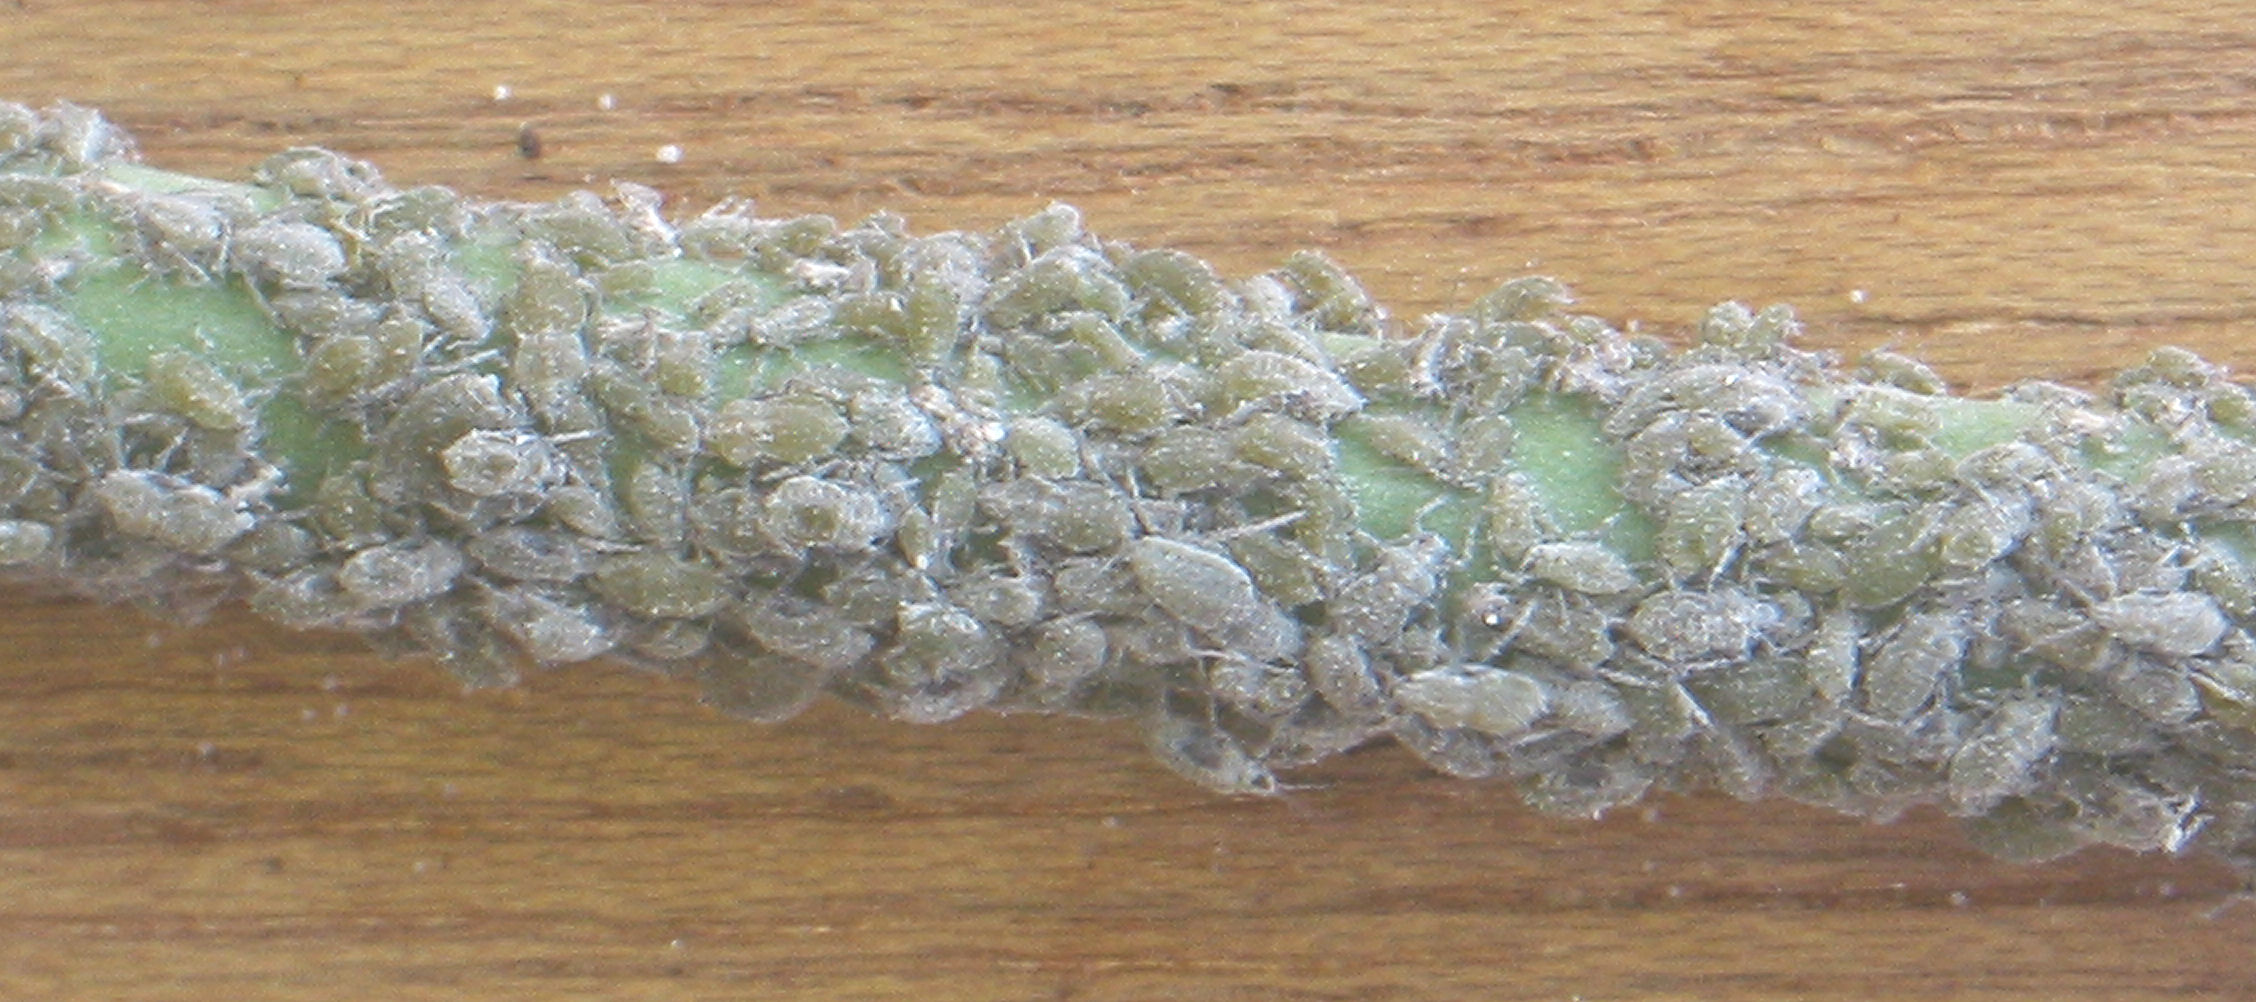 Капустная тля (Brevicoryne brassicae L.)